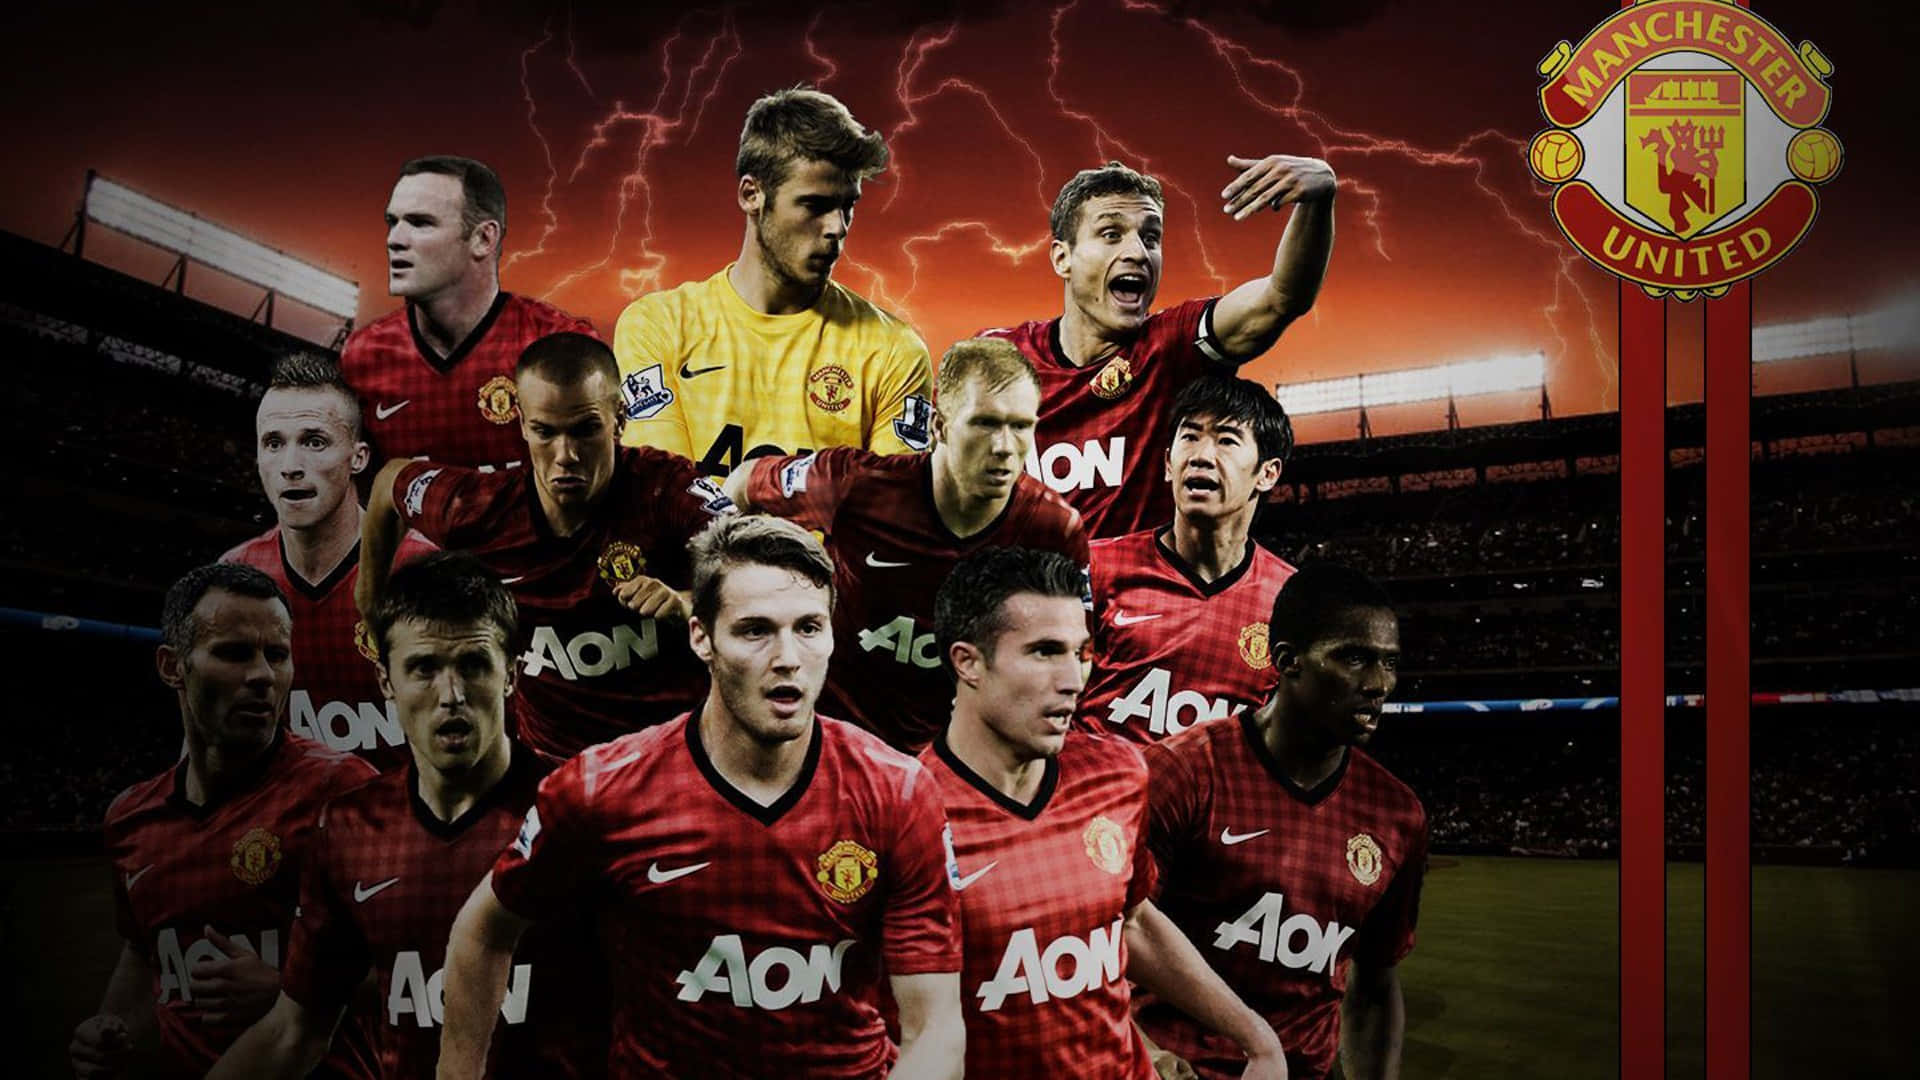 Ilteam Del Manchester United - Pronto Per La Conquista Del Titolo Di Premier League Sfondo